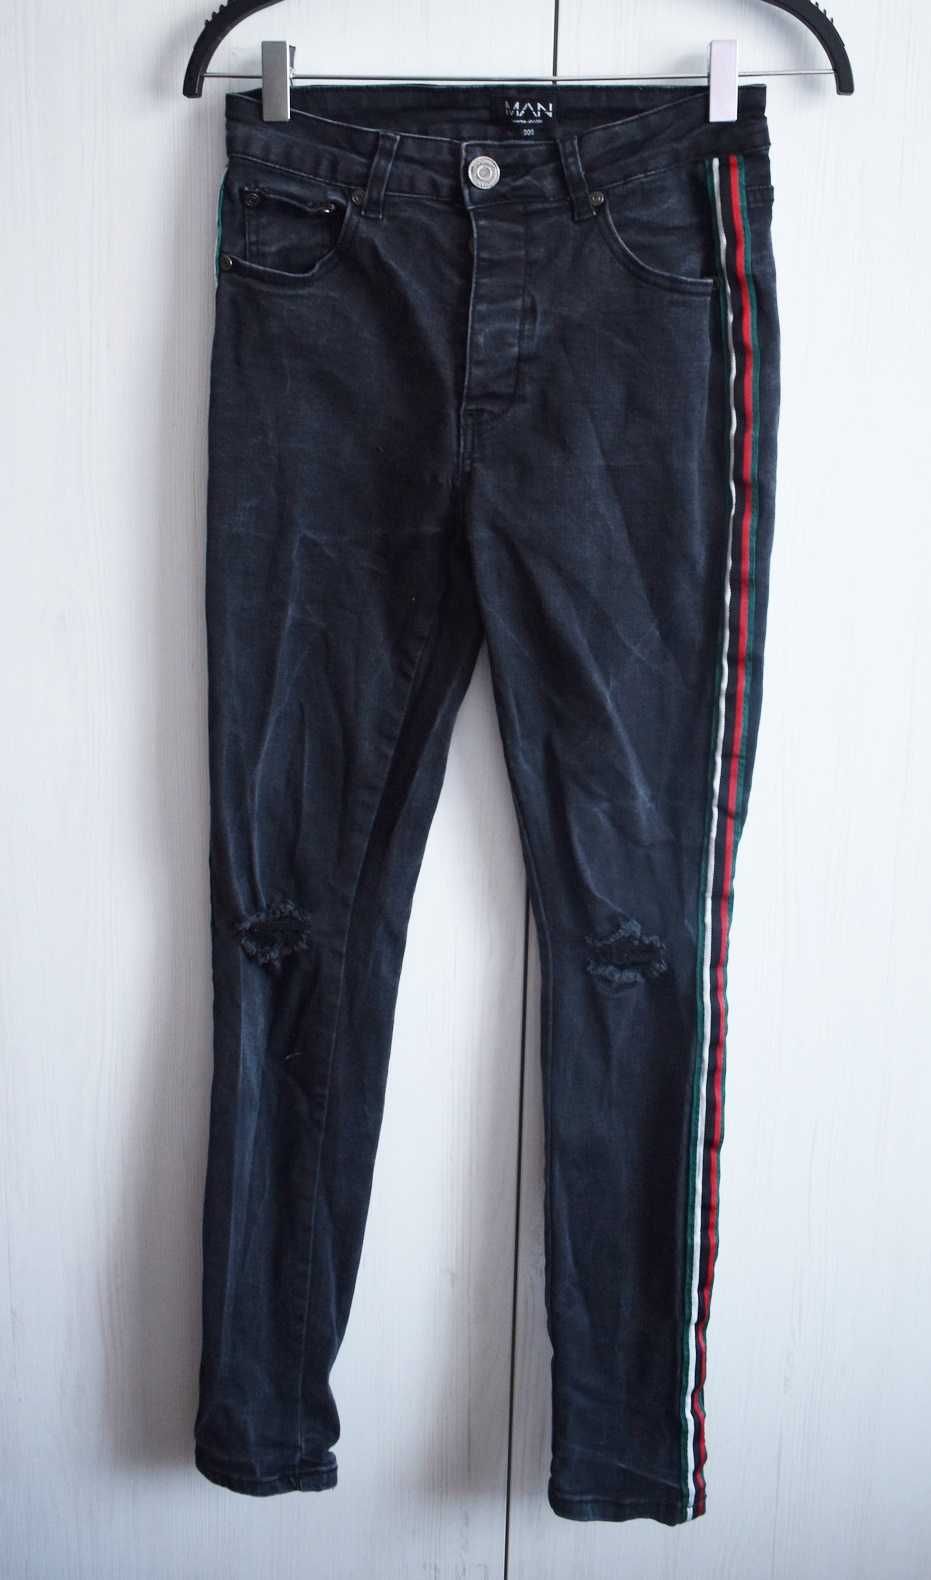 Spodnie dżinsowe XS lampasy jeans rurki dziury S męskie dopasowane